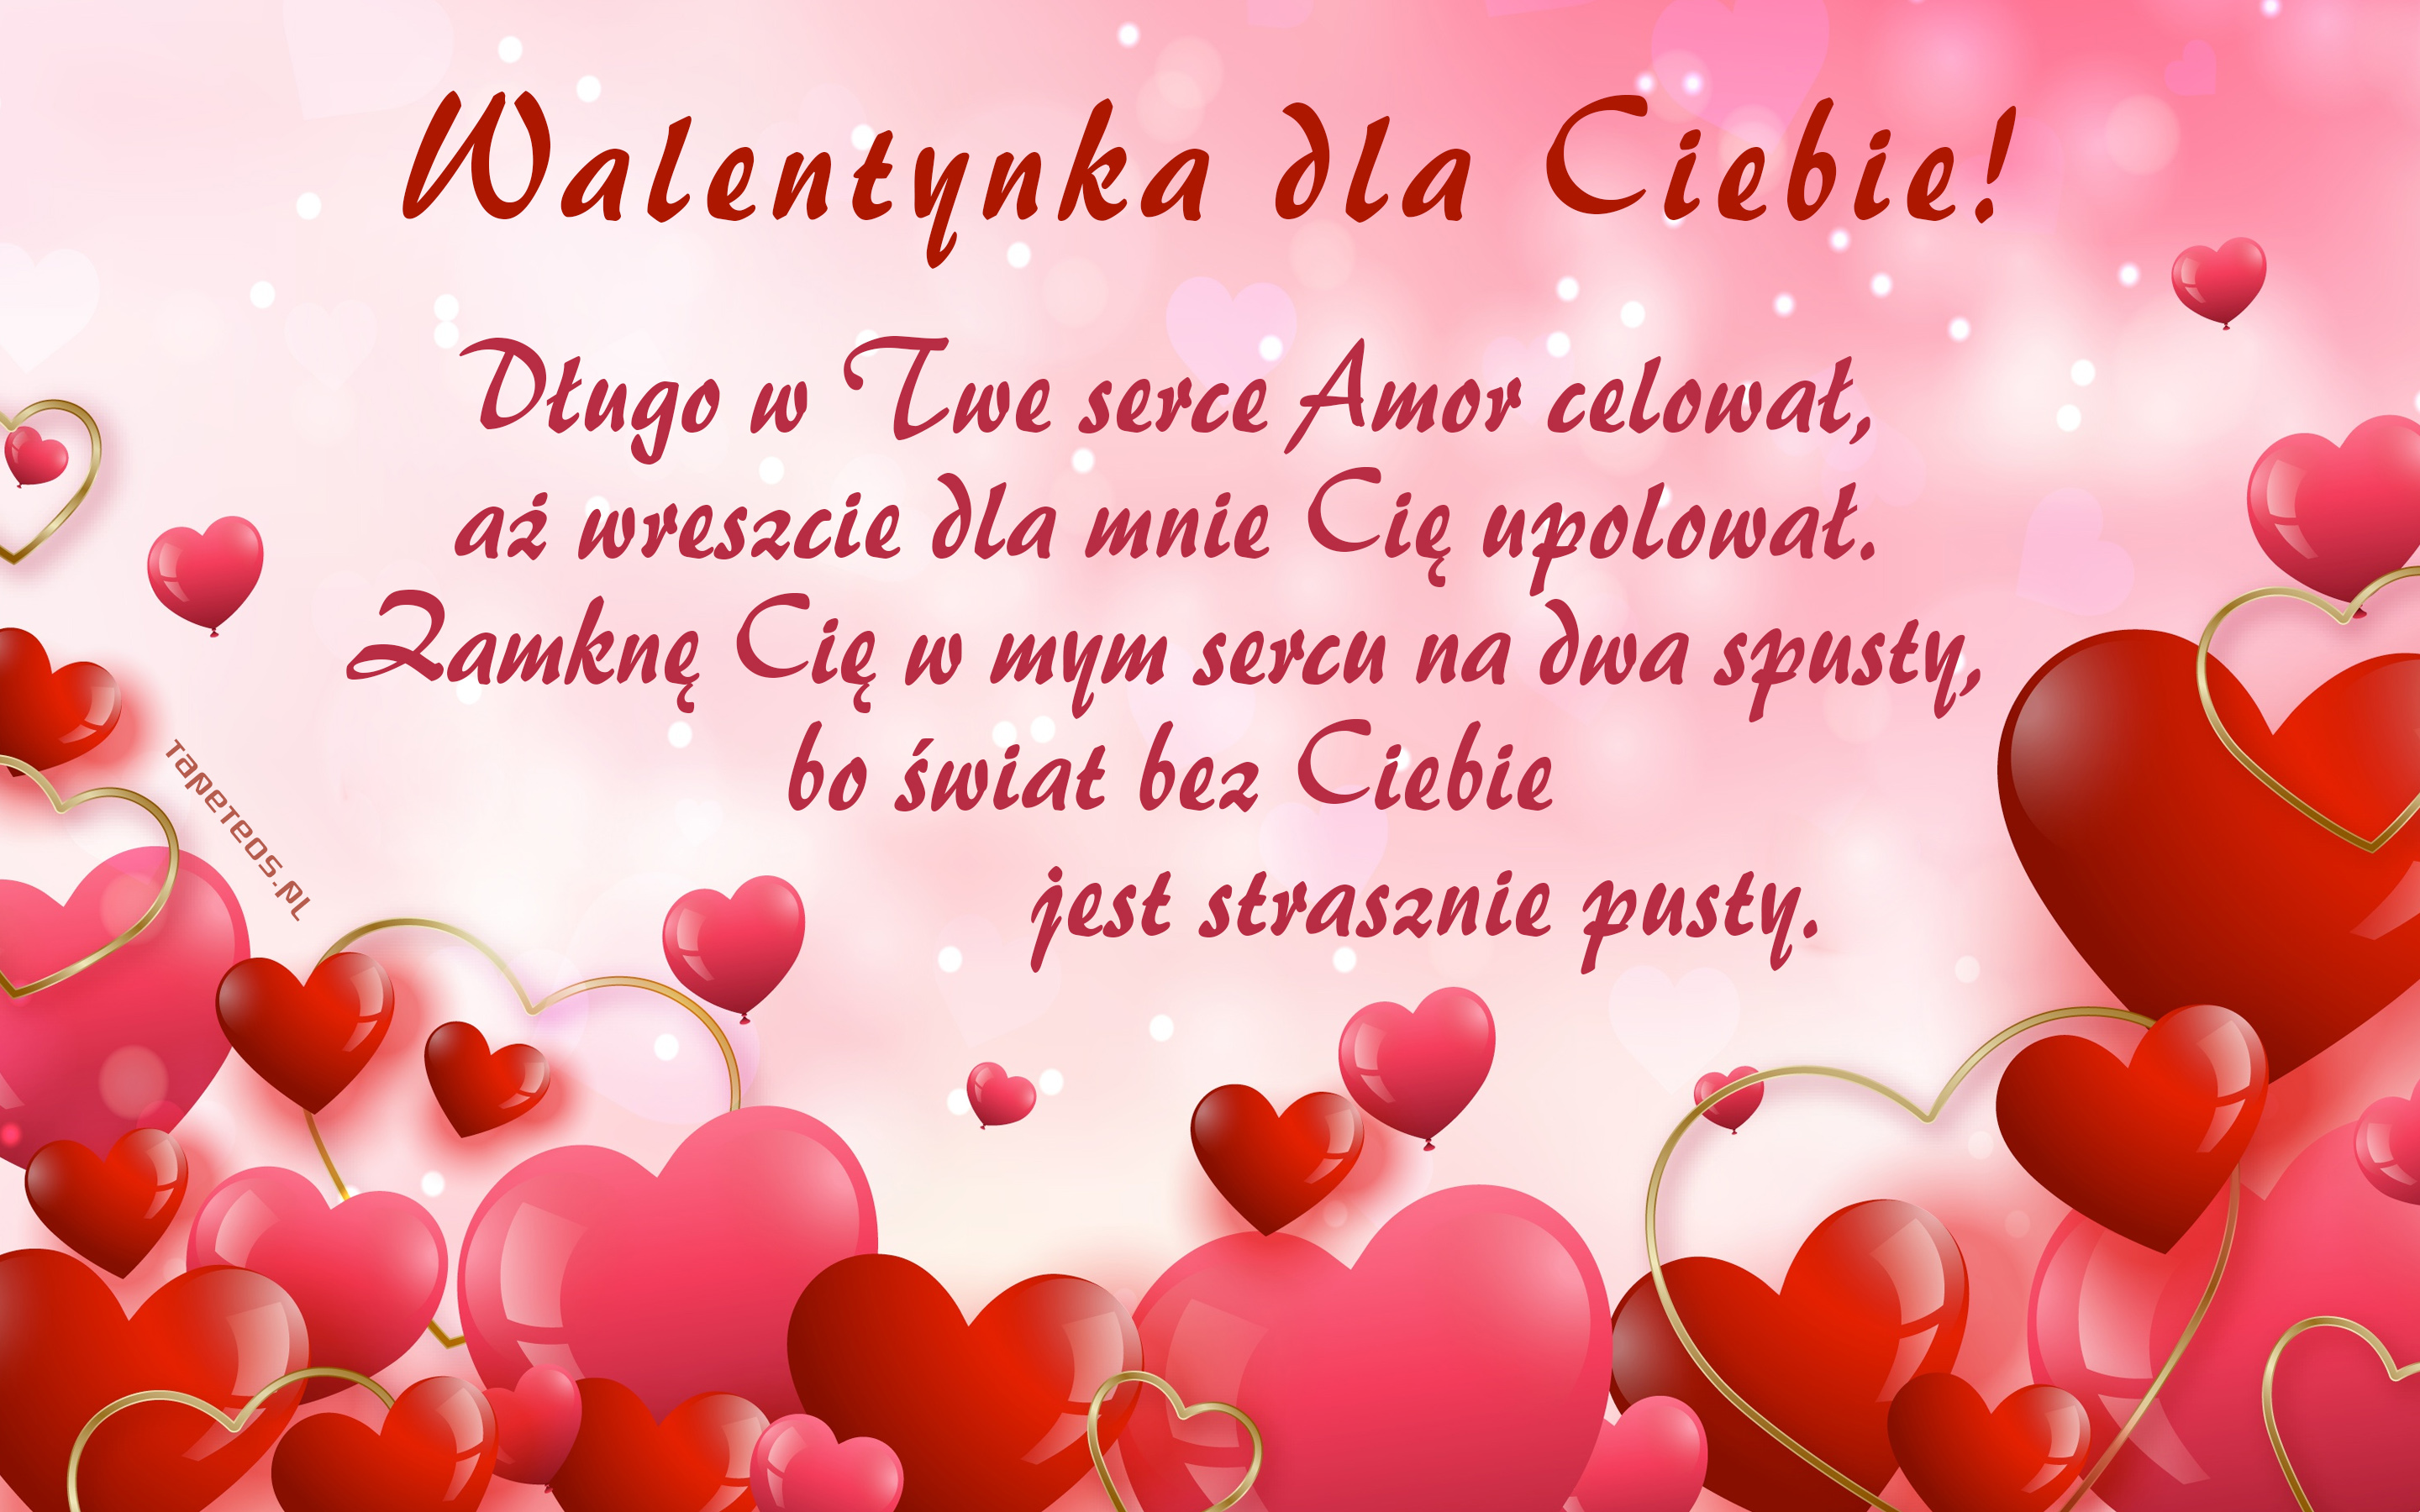 Walentynki, Milosc 1473 Walentynka, Zyczenia Walentynkowe, Dlugo w Twe serce Amor ...